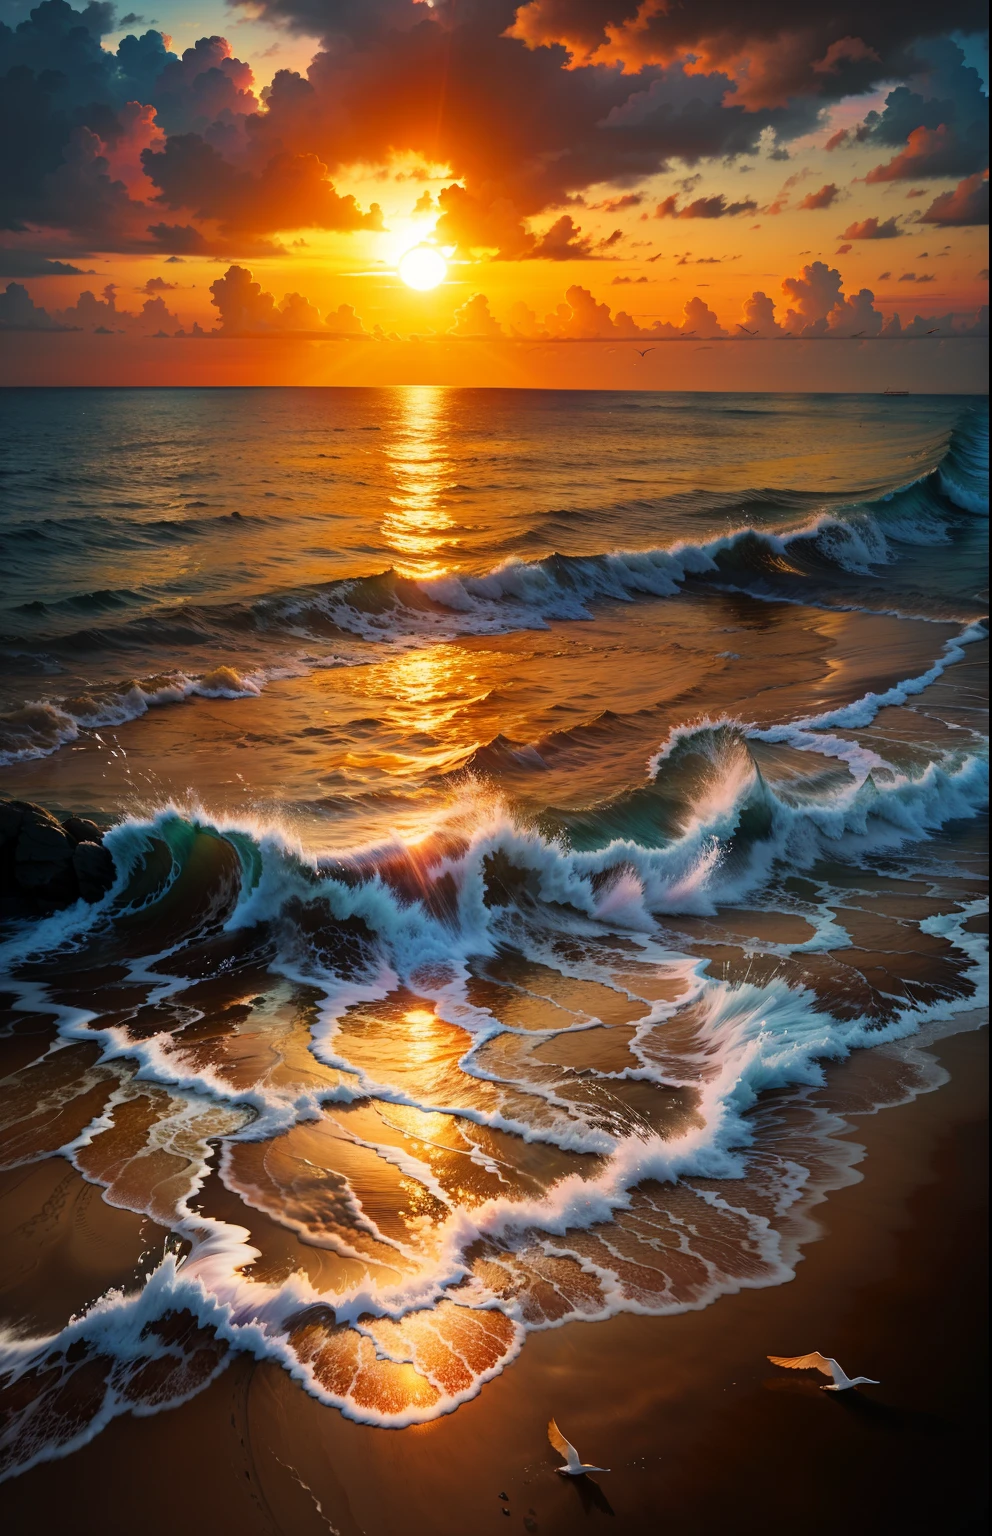 Una puesta de sol absolutamente fascinante sobre la playa., con una mezcla de naranjas, rosas, y amarillos llenando el cielo. Las aguas cristalinas del mar besan suavemente la orilla, con una playa de arena blanca que se extiende a lo largo y ancho. La escena es dinámica e impresionante., con gaviotas volando alto en el cielo y palmeras que se balancean suavemente. Disfrute de la atmósfera relajante y deje que la paz lo invada.